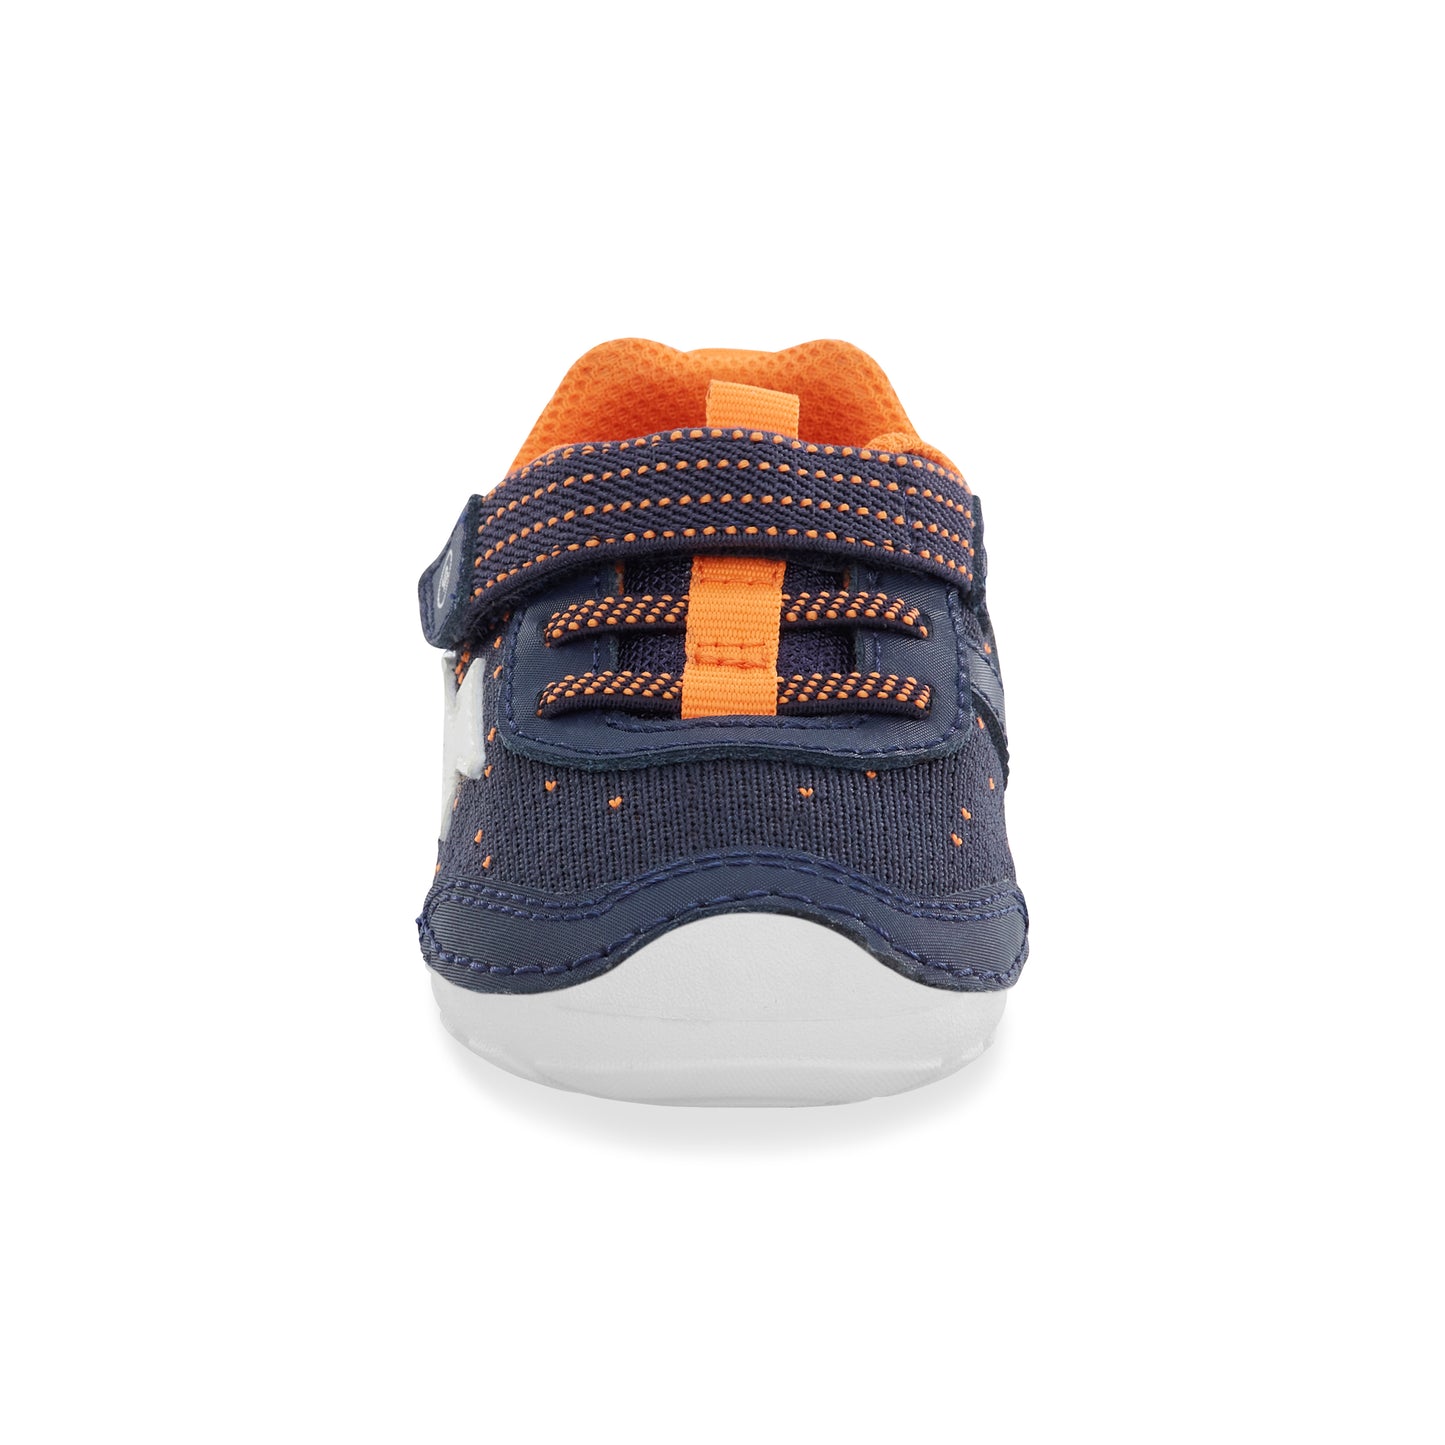 soft-motion-zips-runner-sneaker-littlekid-navy-orange__Navy Orange_5